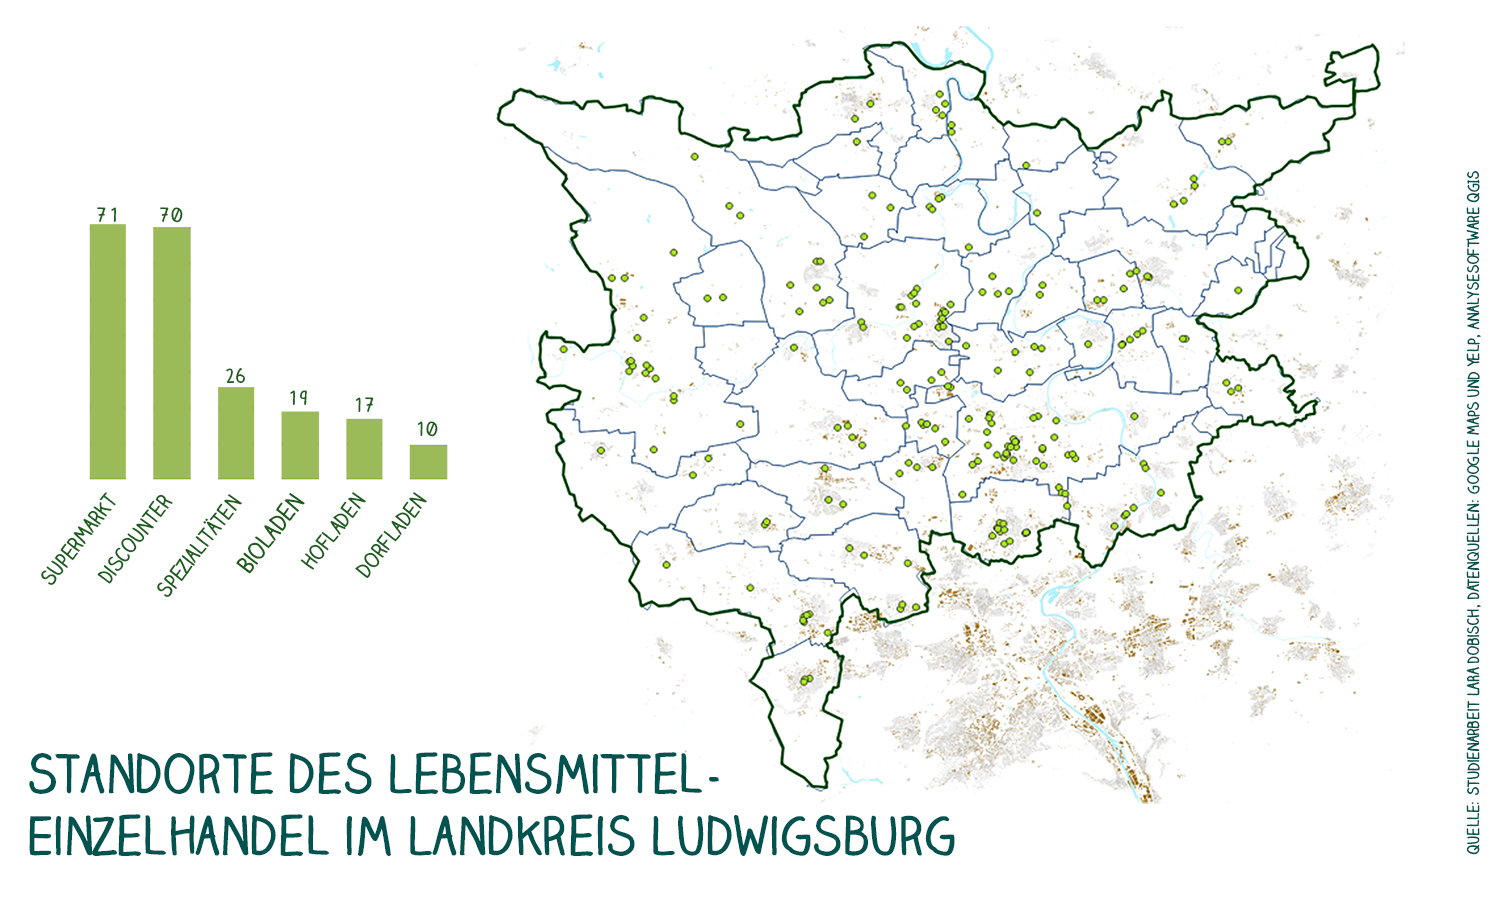 Die Infografik zeigt den Landkreis Luswigsburg mit seinen Gemarkungen und darin mit grünen Punkten markiert die Standorte des Lebensmittel-Einzelhandels. In einem Balkendiagramm ist zudem der zahlenmäßige Anteil von Supermärkten (71), Discountern (70), Spezialitätenläden (26), Bioläden (19), Hofläden (17) und Dorfläden (10) dargestellt.